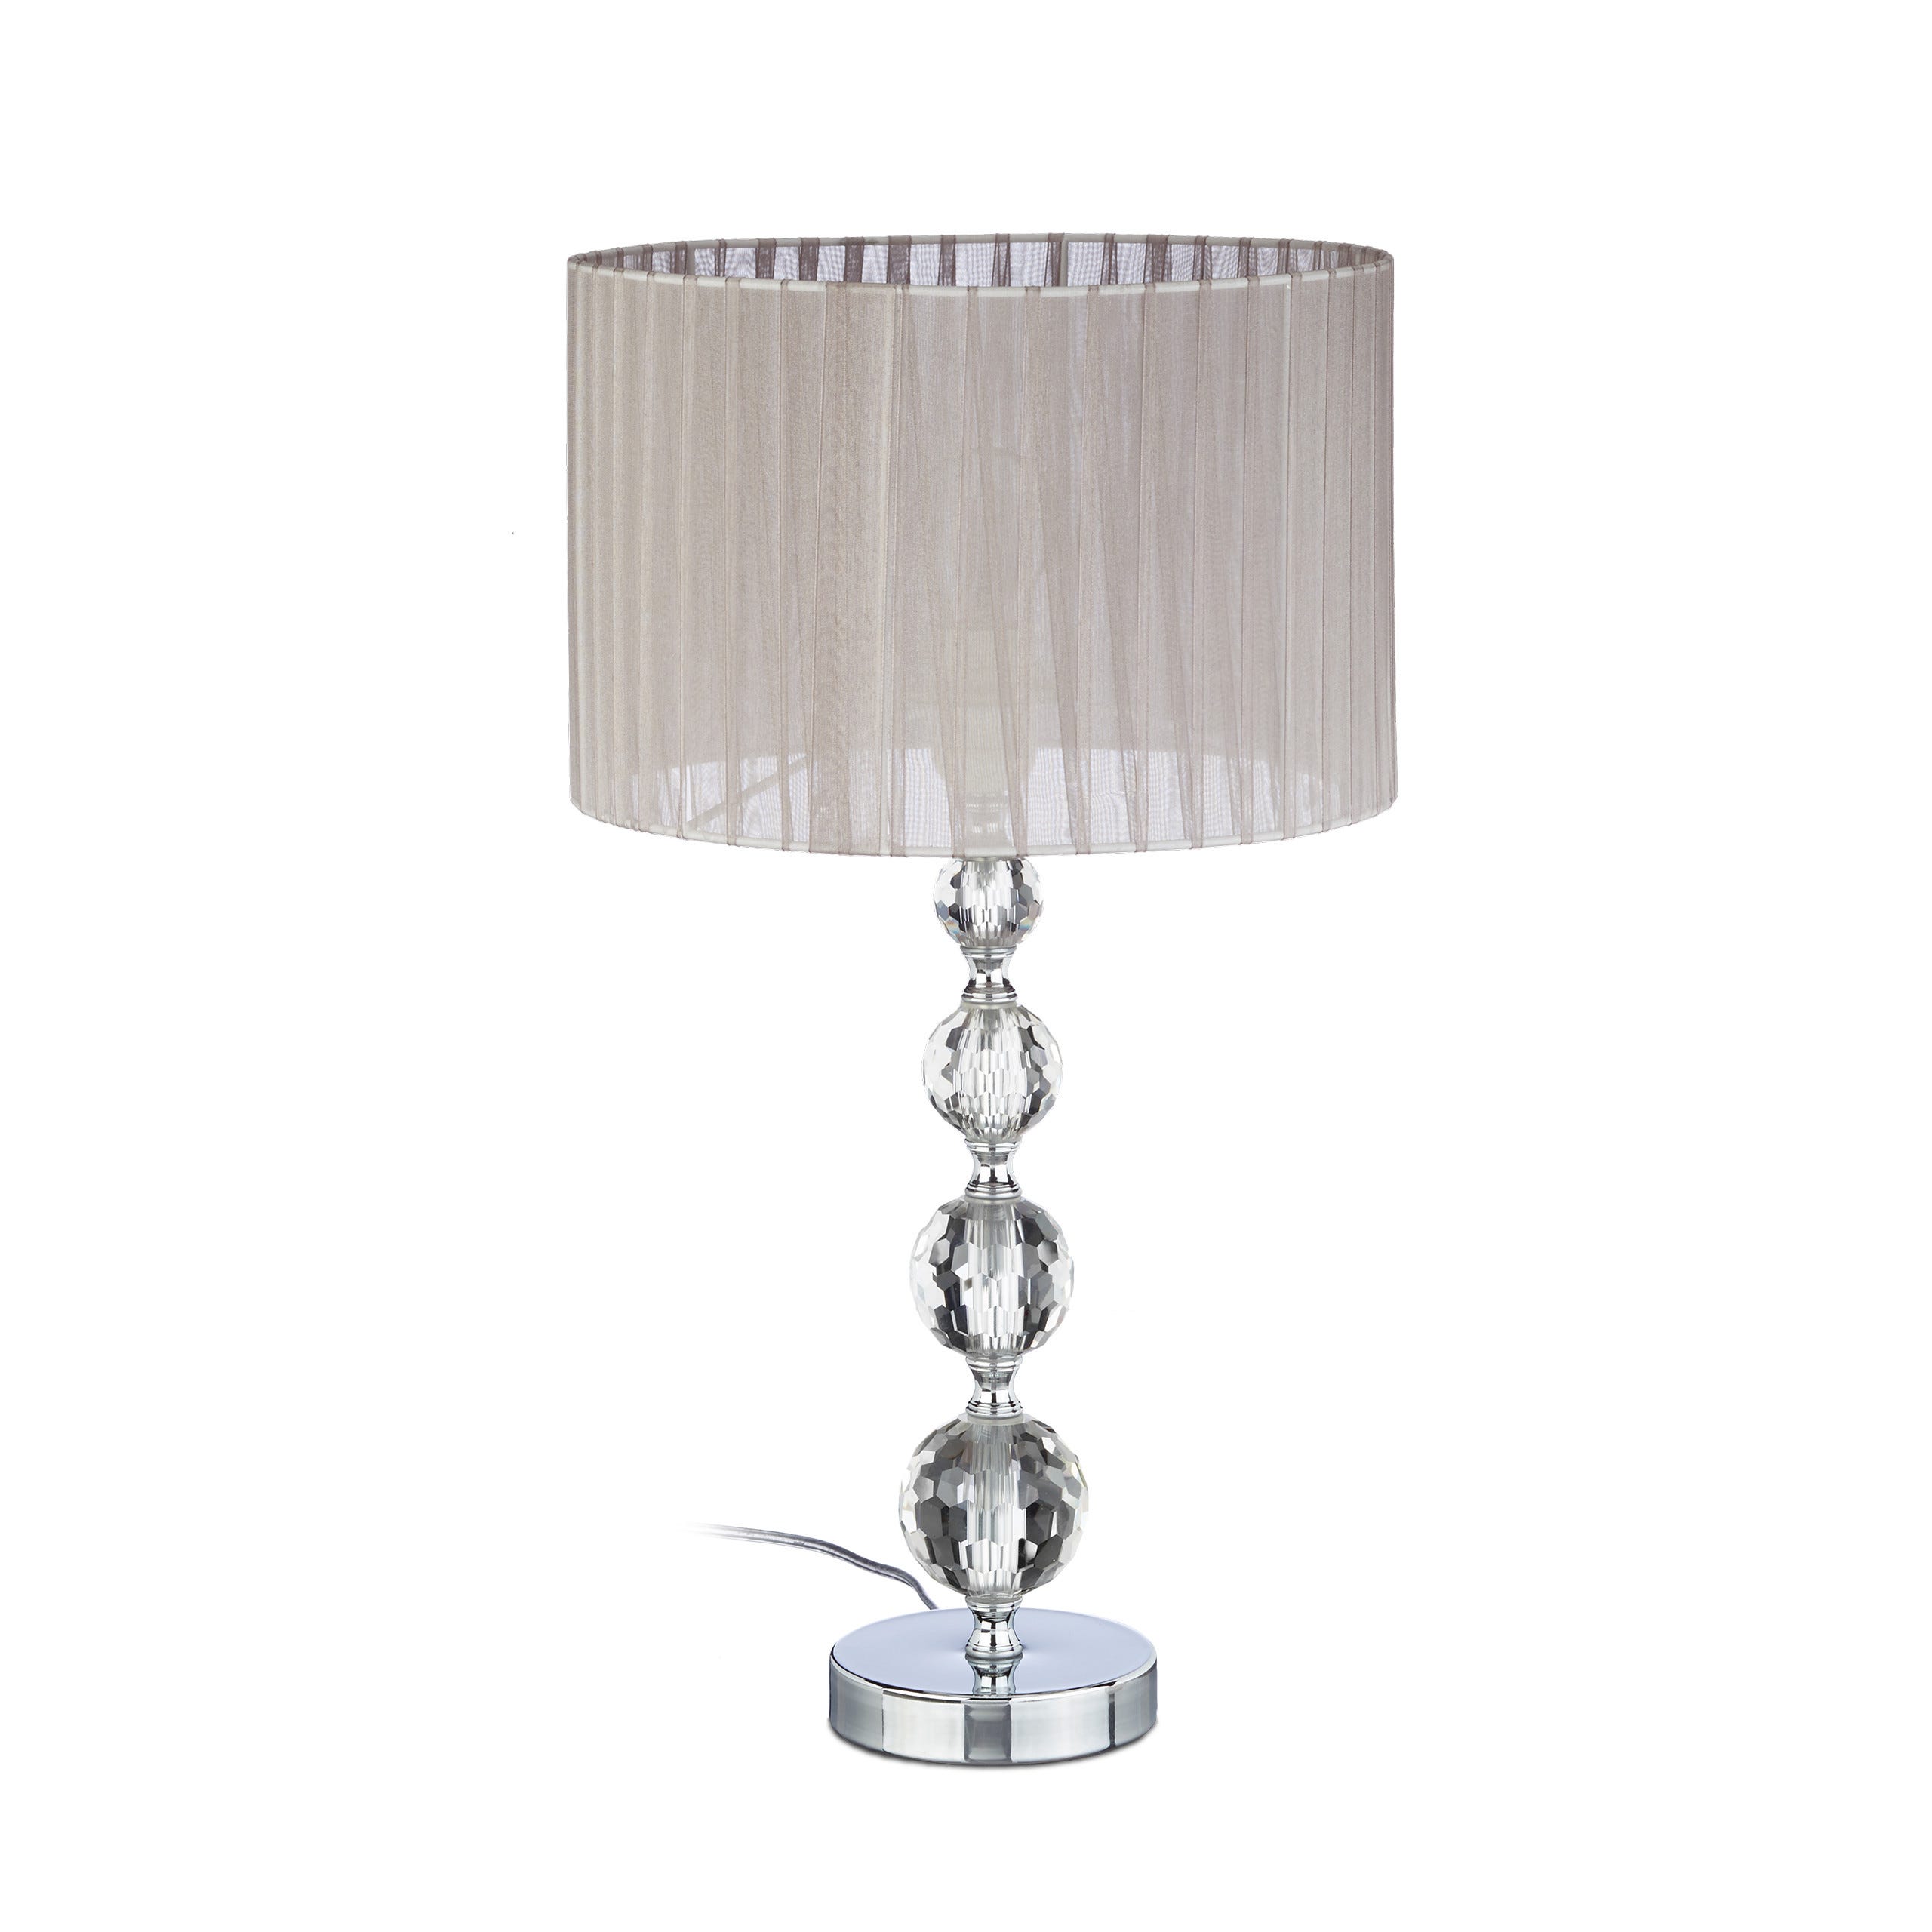 Relaxdays Lampe de chevet abat-jour tissu voile boules verre cristal lampe  de nuit HxlxP: 53x29,5x29,5 cm, claire/argent